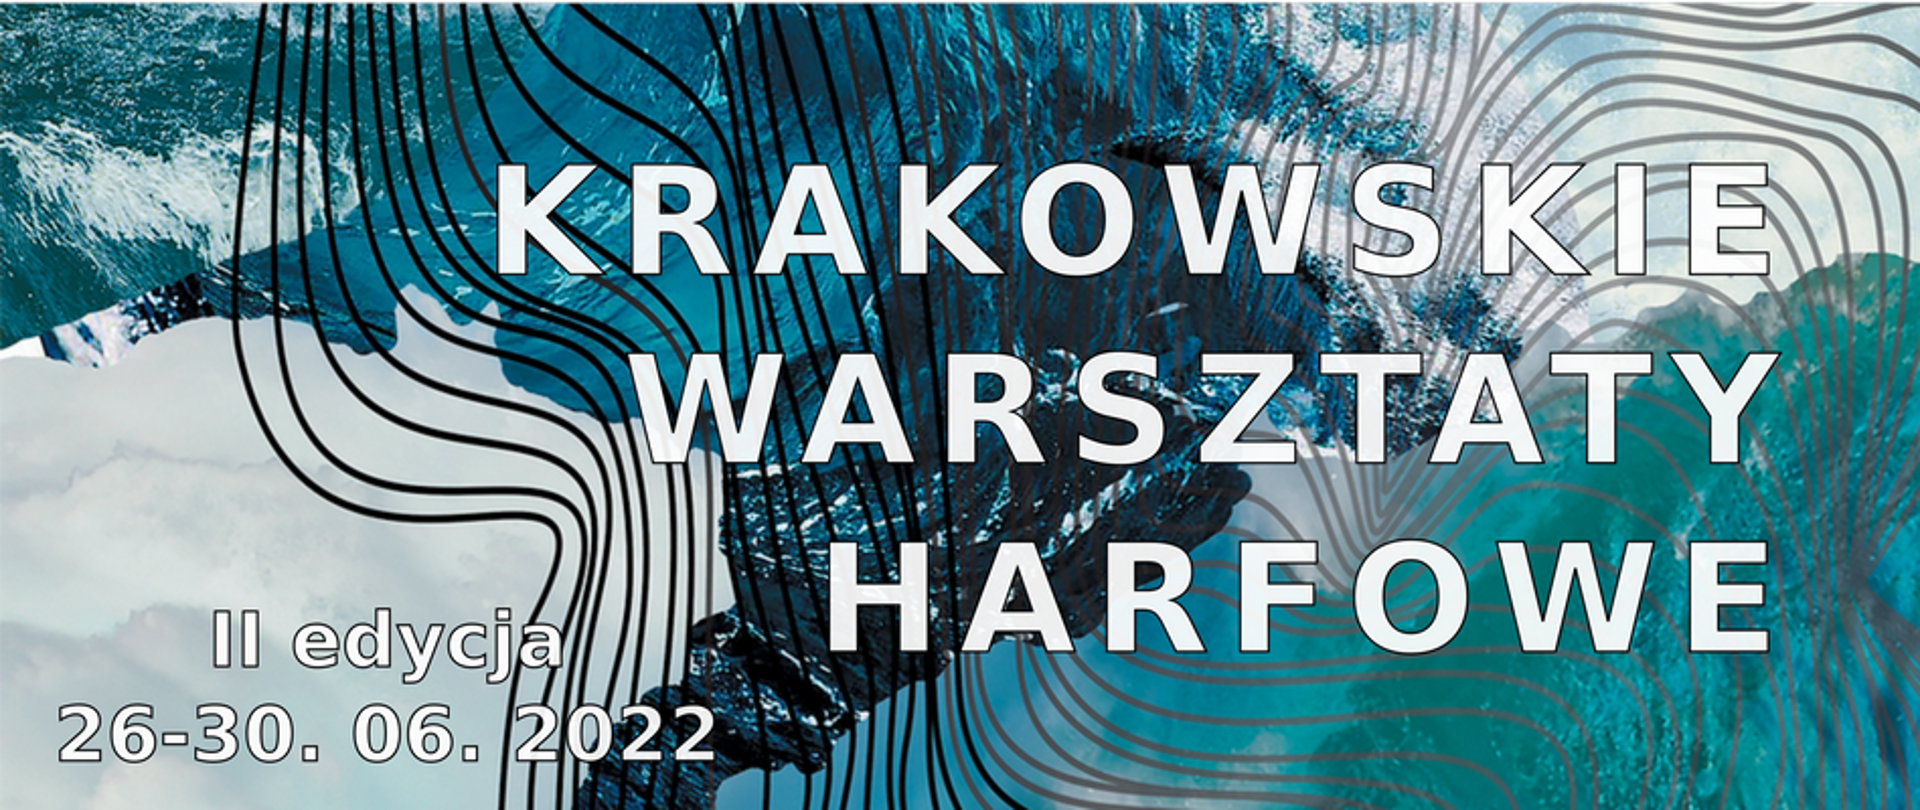 Plakat wydarzenia; tło w kolorystyce niebieskiej, grafika tła przypomina fragmenty fal morskich; na tym tle czarno-szare, krzywe linie. Z prawej strony napis dużą, białą czcionką: Krakowskie Warsztaty Harfowe. W lewym dolnym rogu mniejszą czcionką: II edycja 26-30. 06. 2022